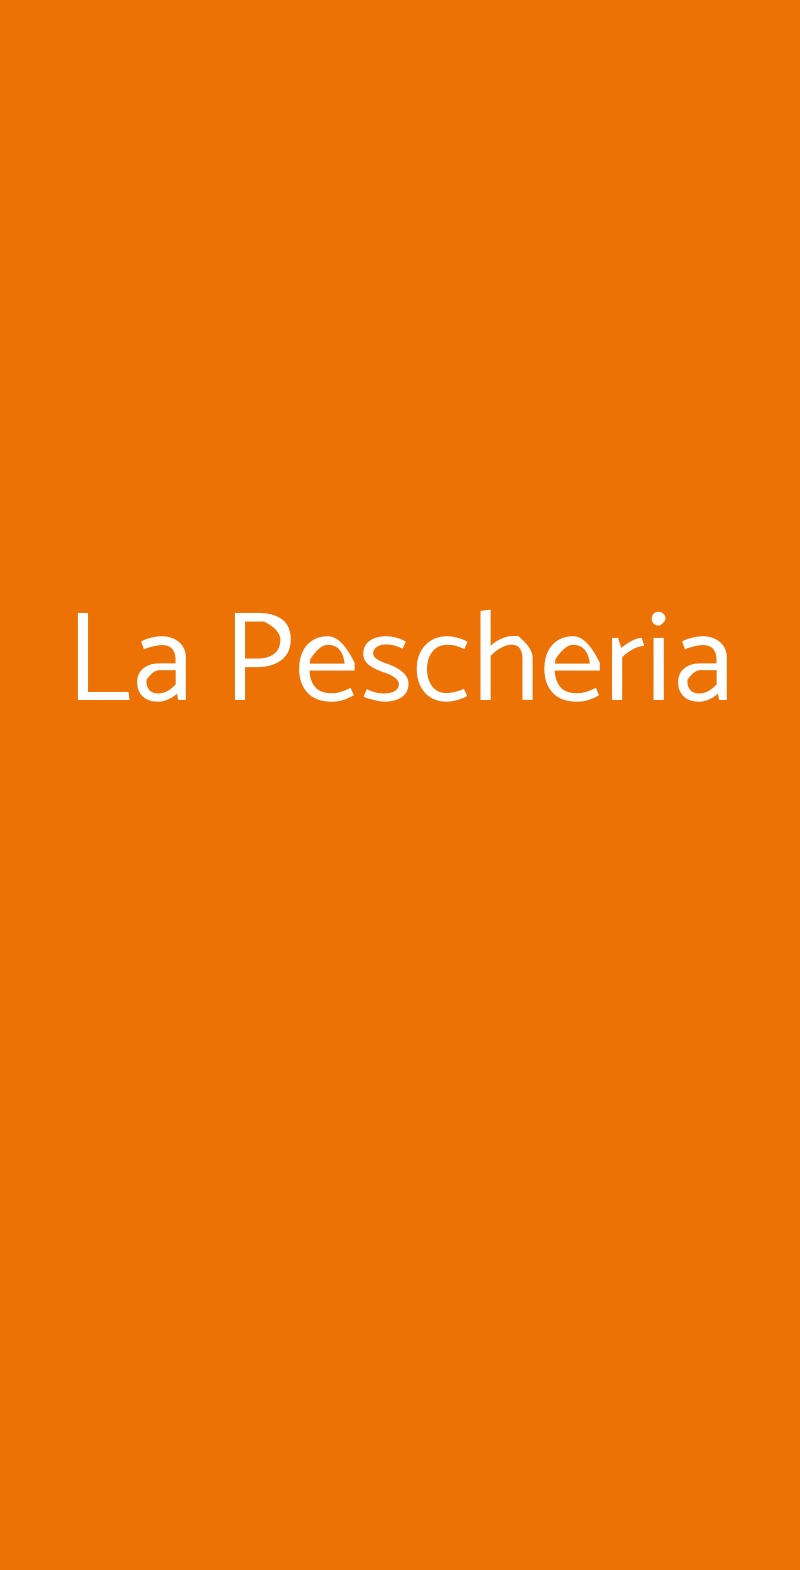 La Pescheria Stresa menù 1 pagina